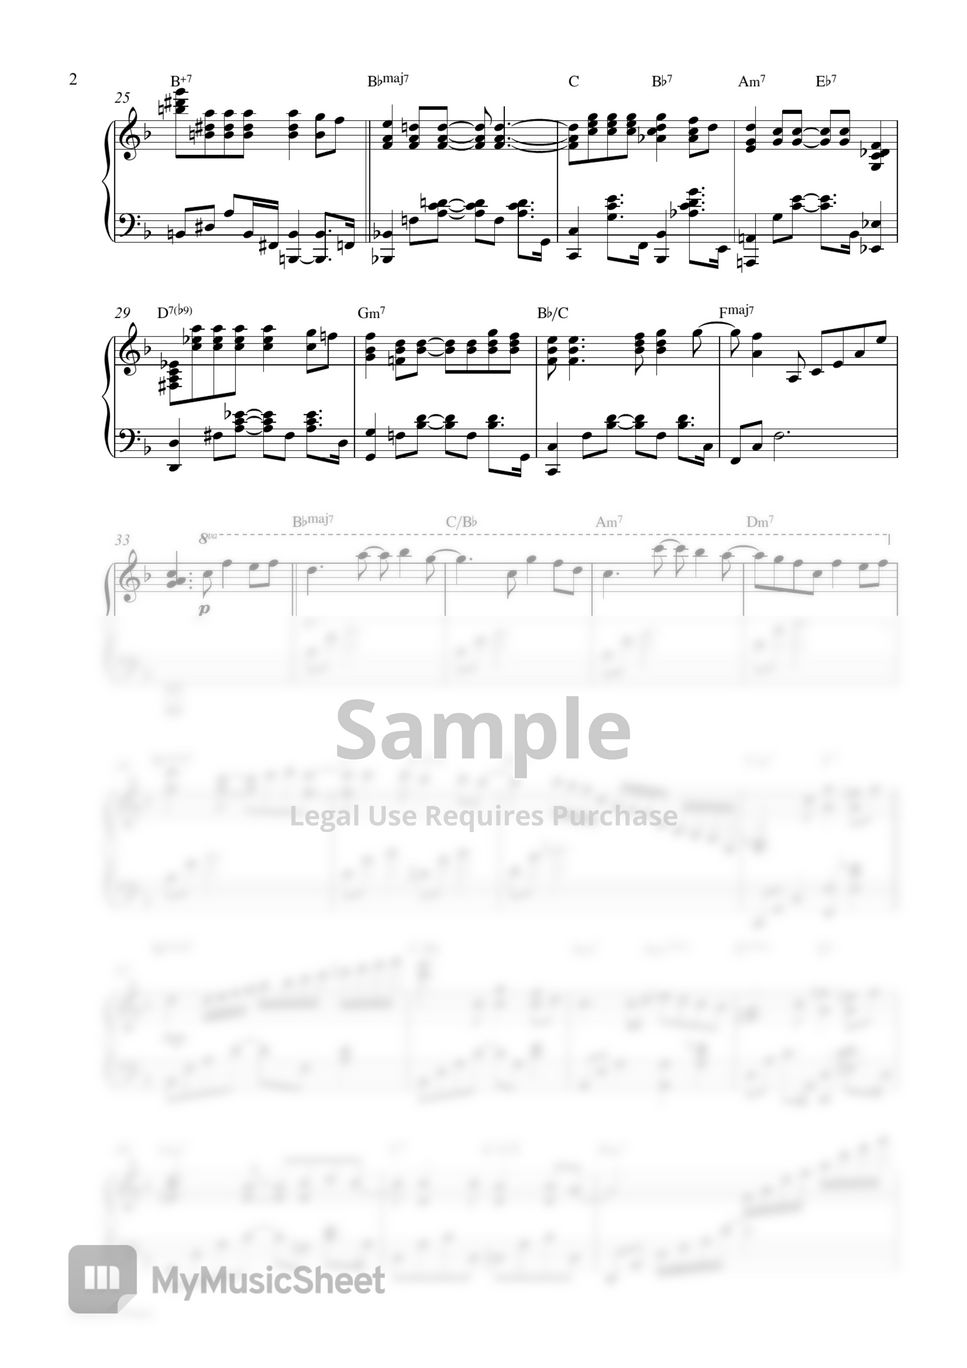 Feliz Navidad (Piano Sheet Music) by Pianella Piano